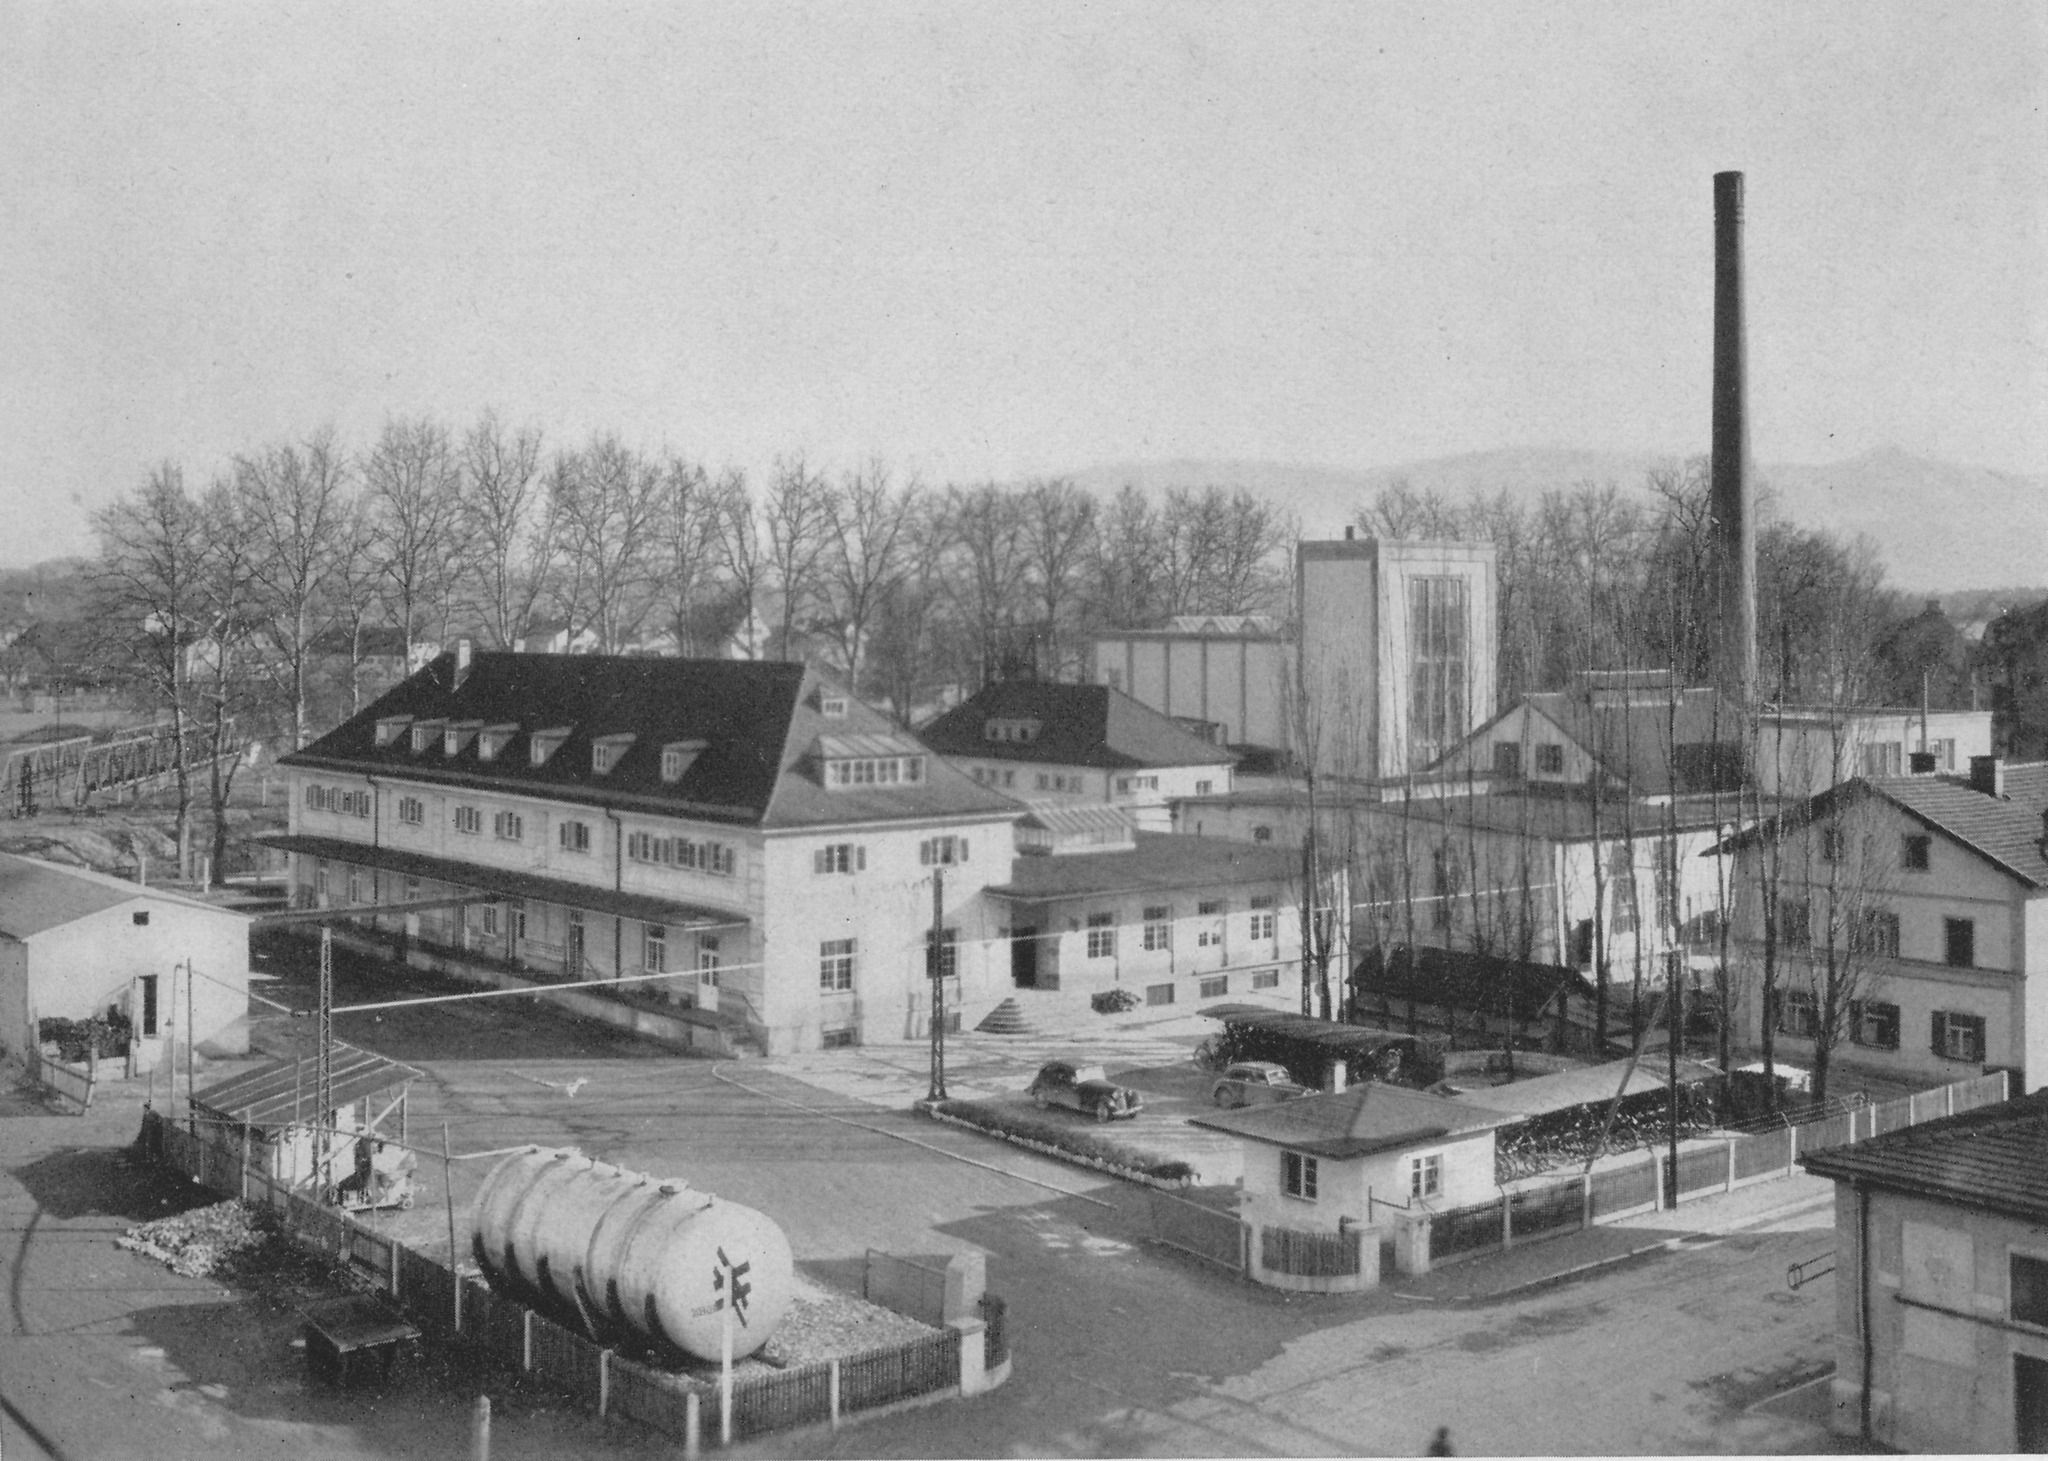 Gervais-Werk Rosenheim im Jahr 1950